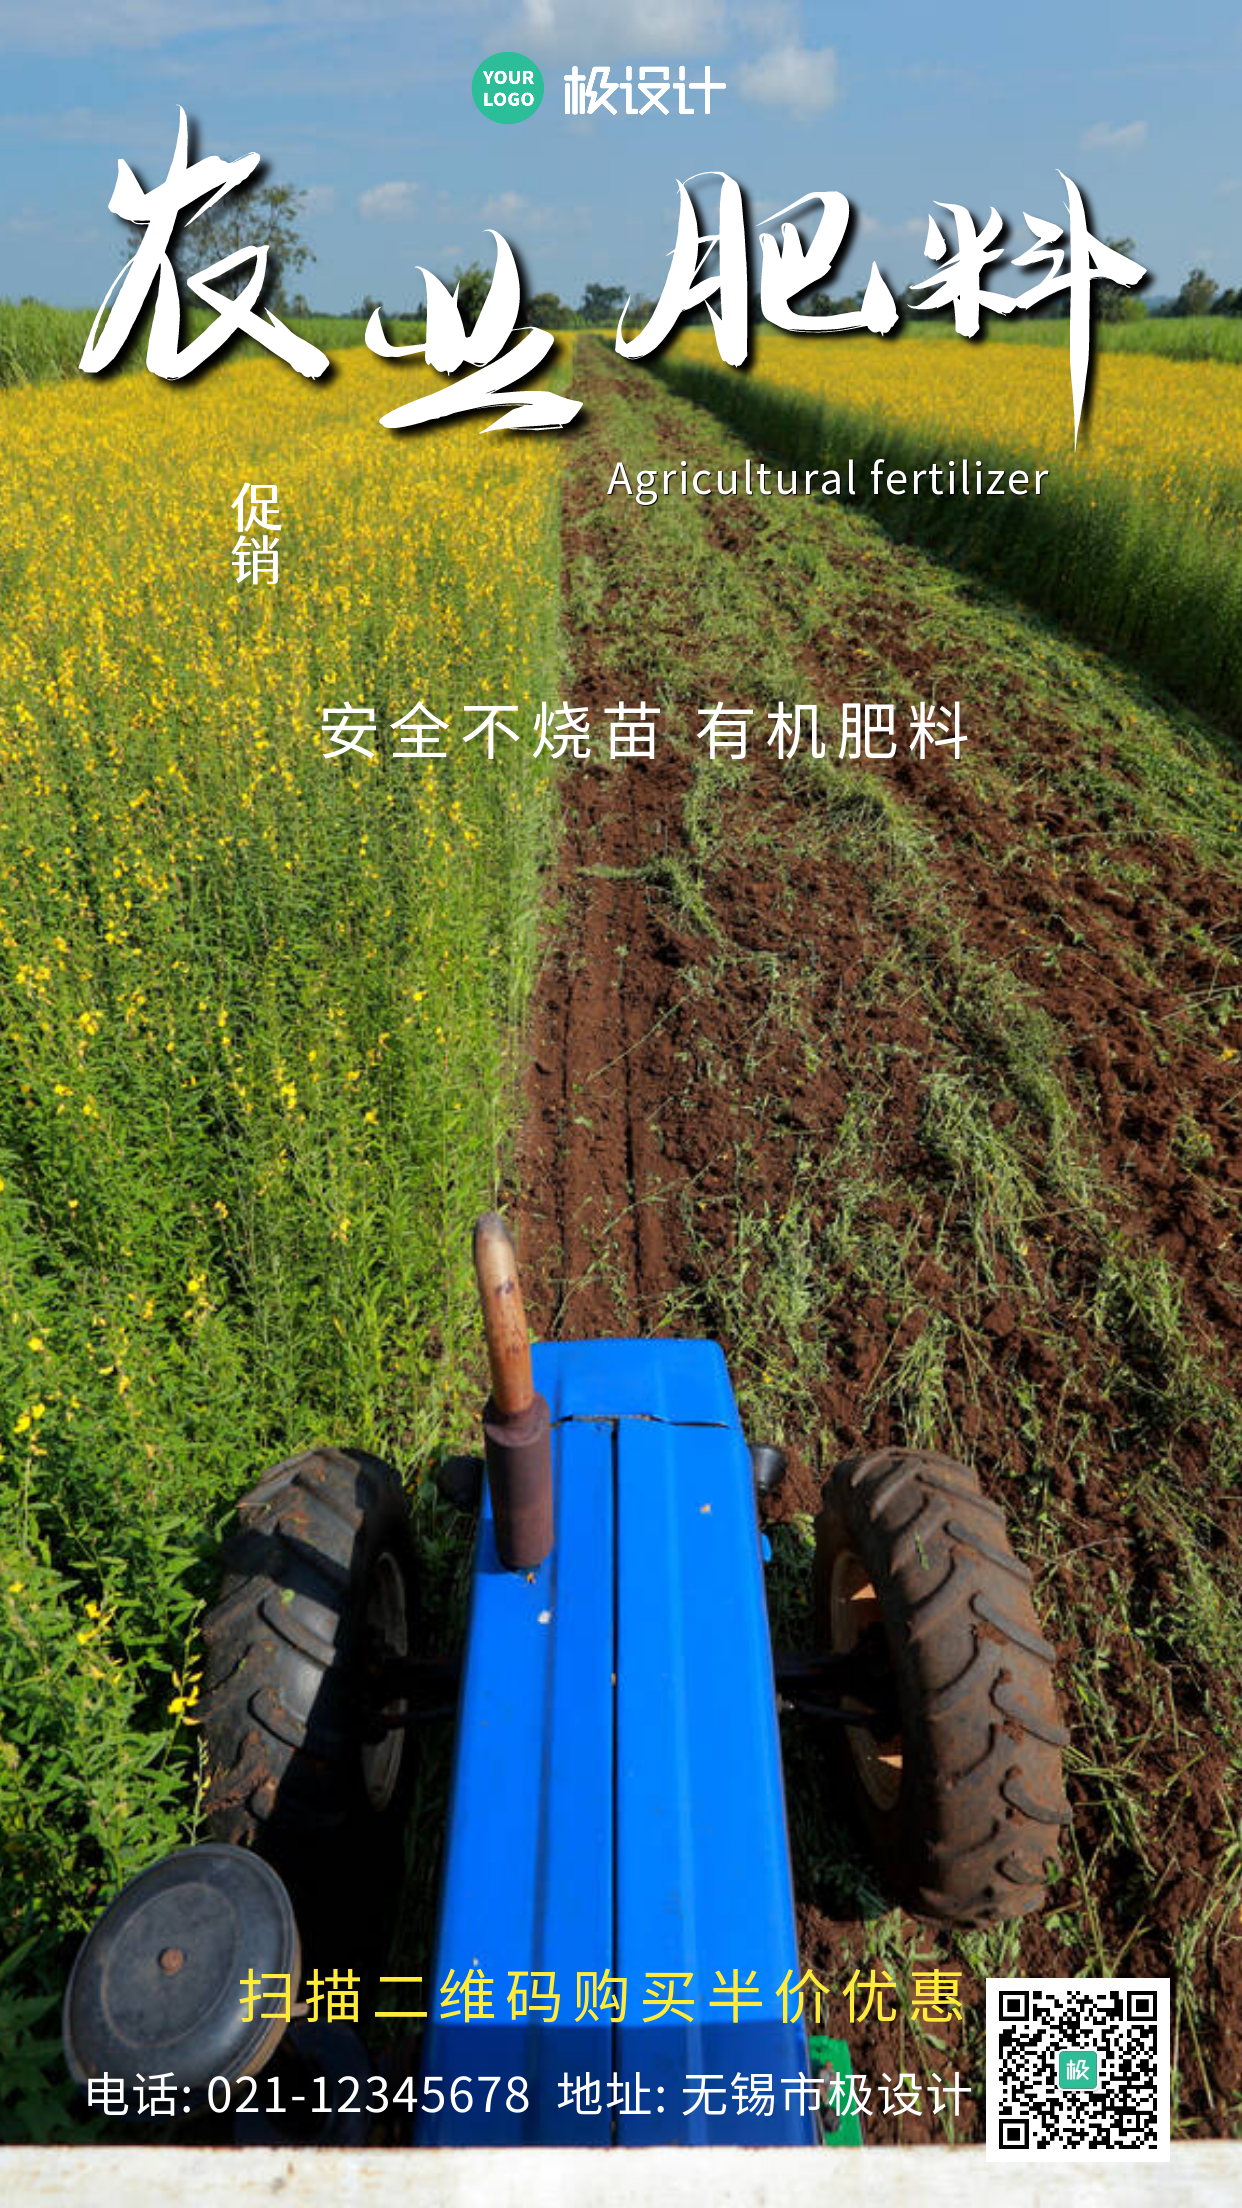 农业肥料简约大气宣传手机海报